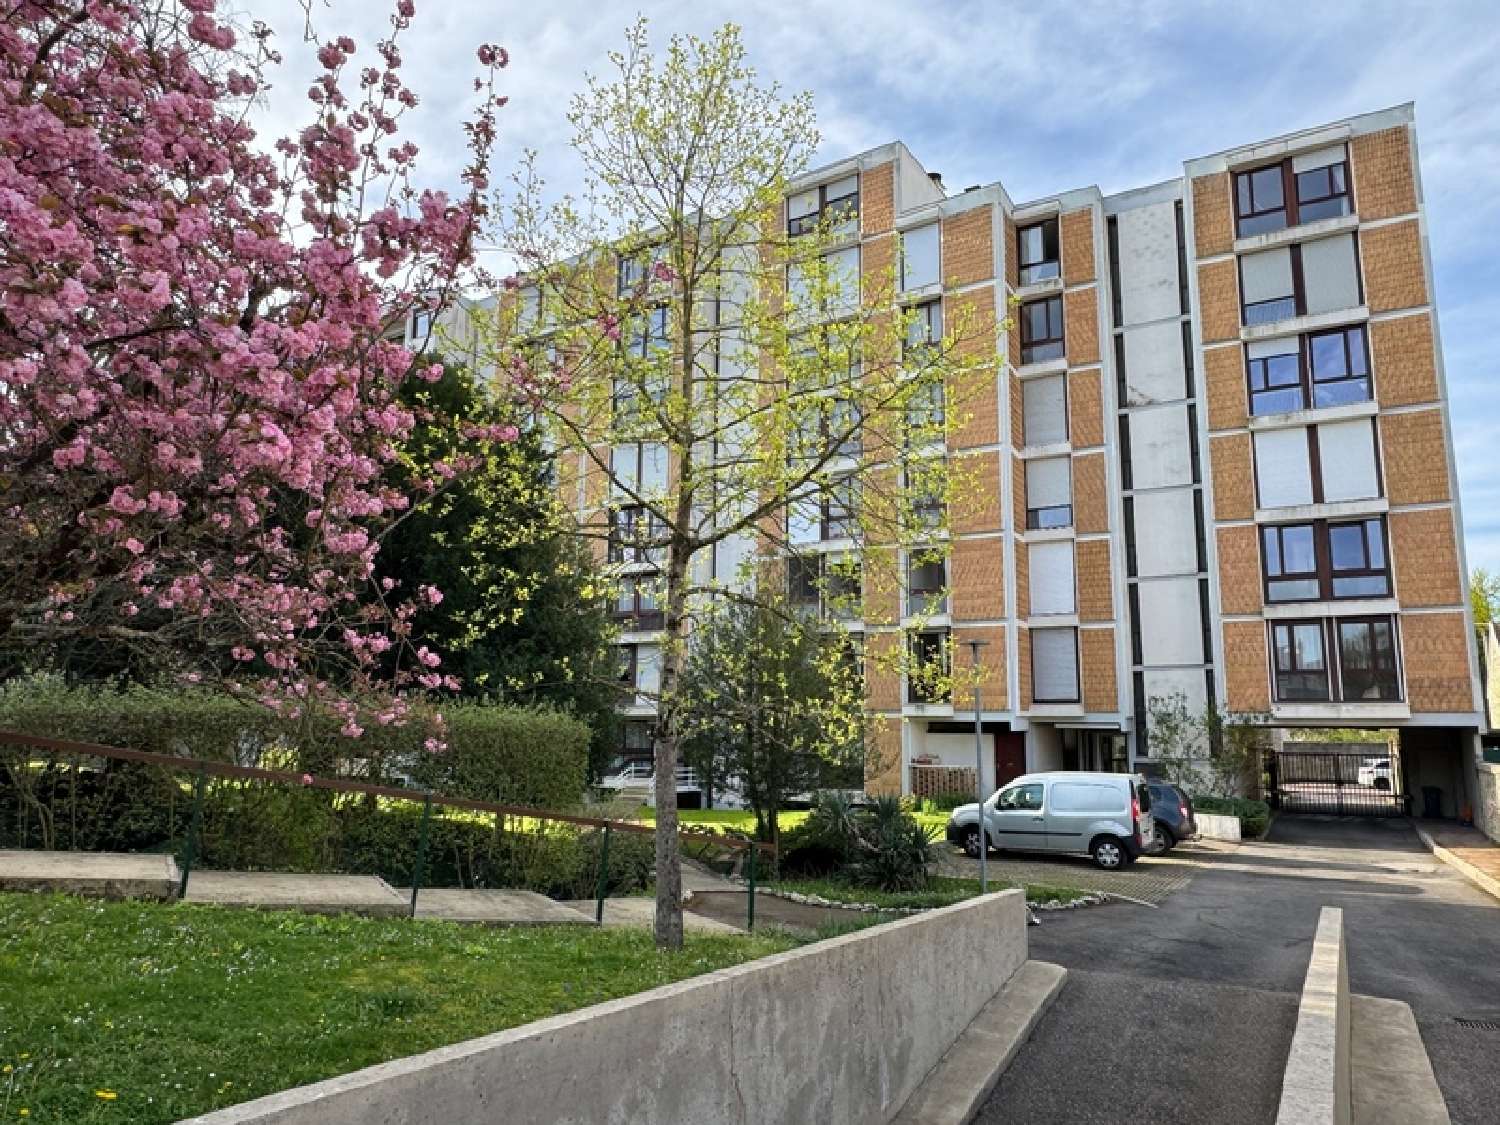  à vendre appartement Saint-Dizier Haute-Marne 1